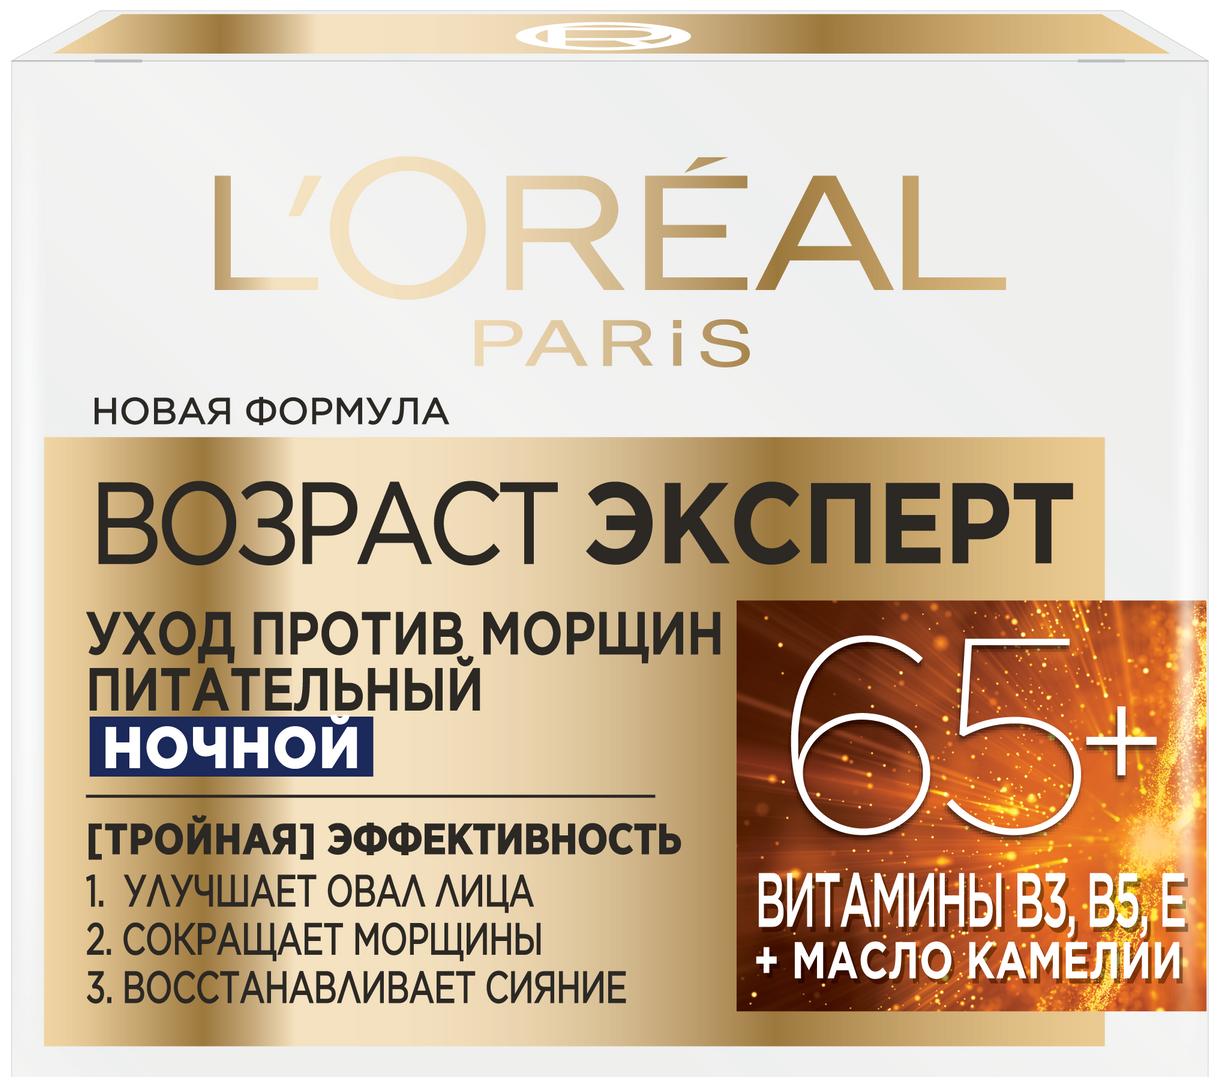 Крем L'Oreal Paris Возраст эксперт 65+ уход против морщин питательный ночной 50 мл., картон